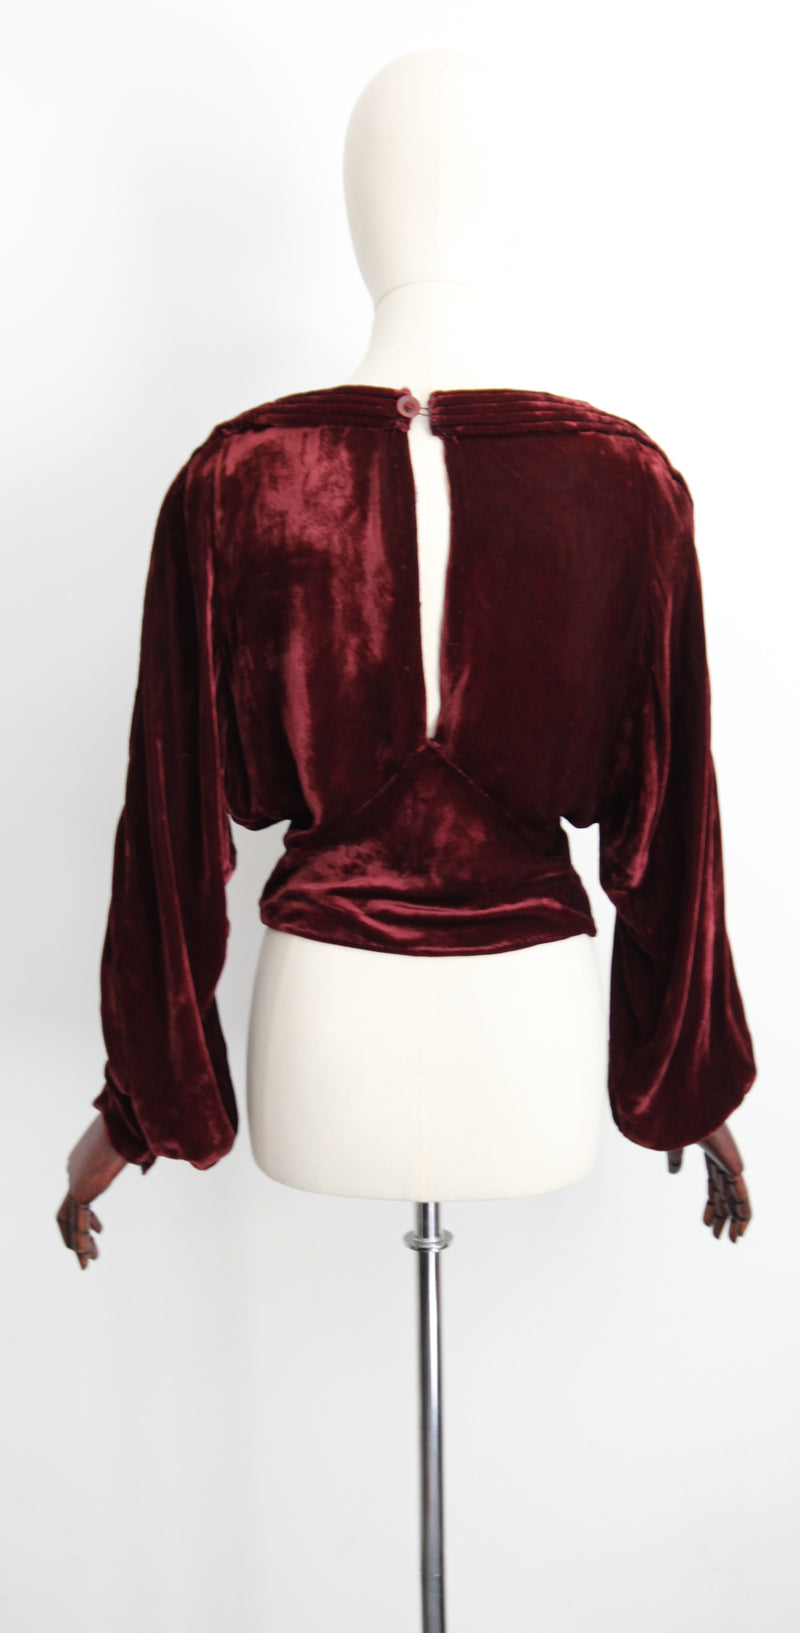 "Deep Maroon Pleats" Vintage 1930's Silk Velvet Maroon Red Pleated Blouse UK 10-14 US 6-10